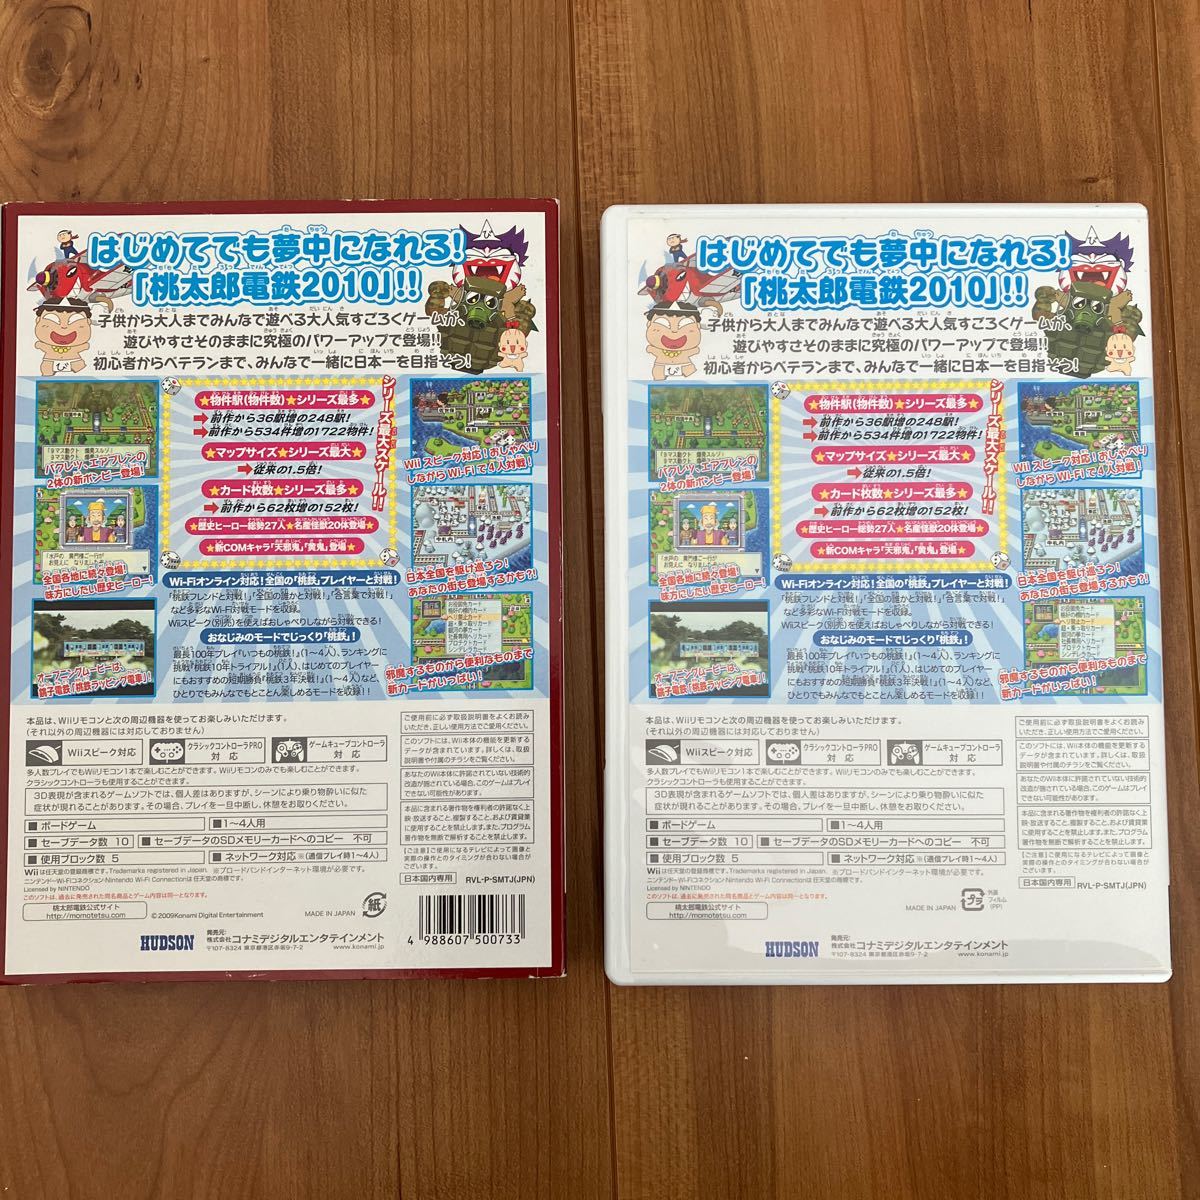 桃太郎電鉄2010 戦国維新のヒーロー大集合 の巻 - Wii ソフト